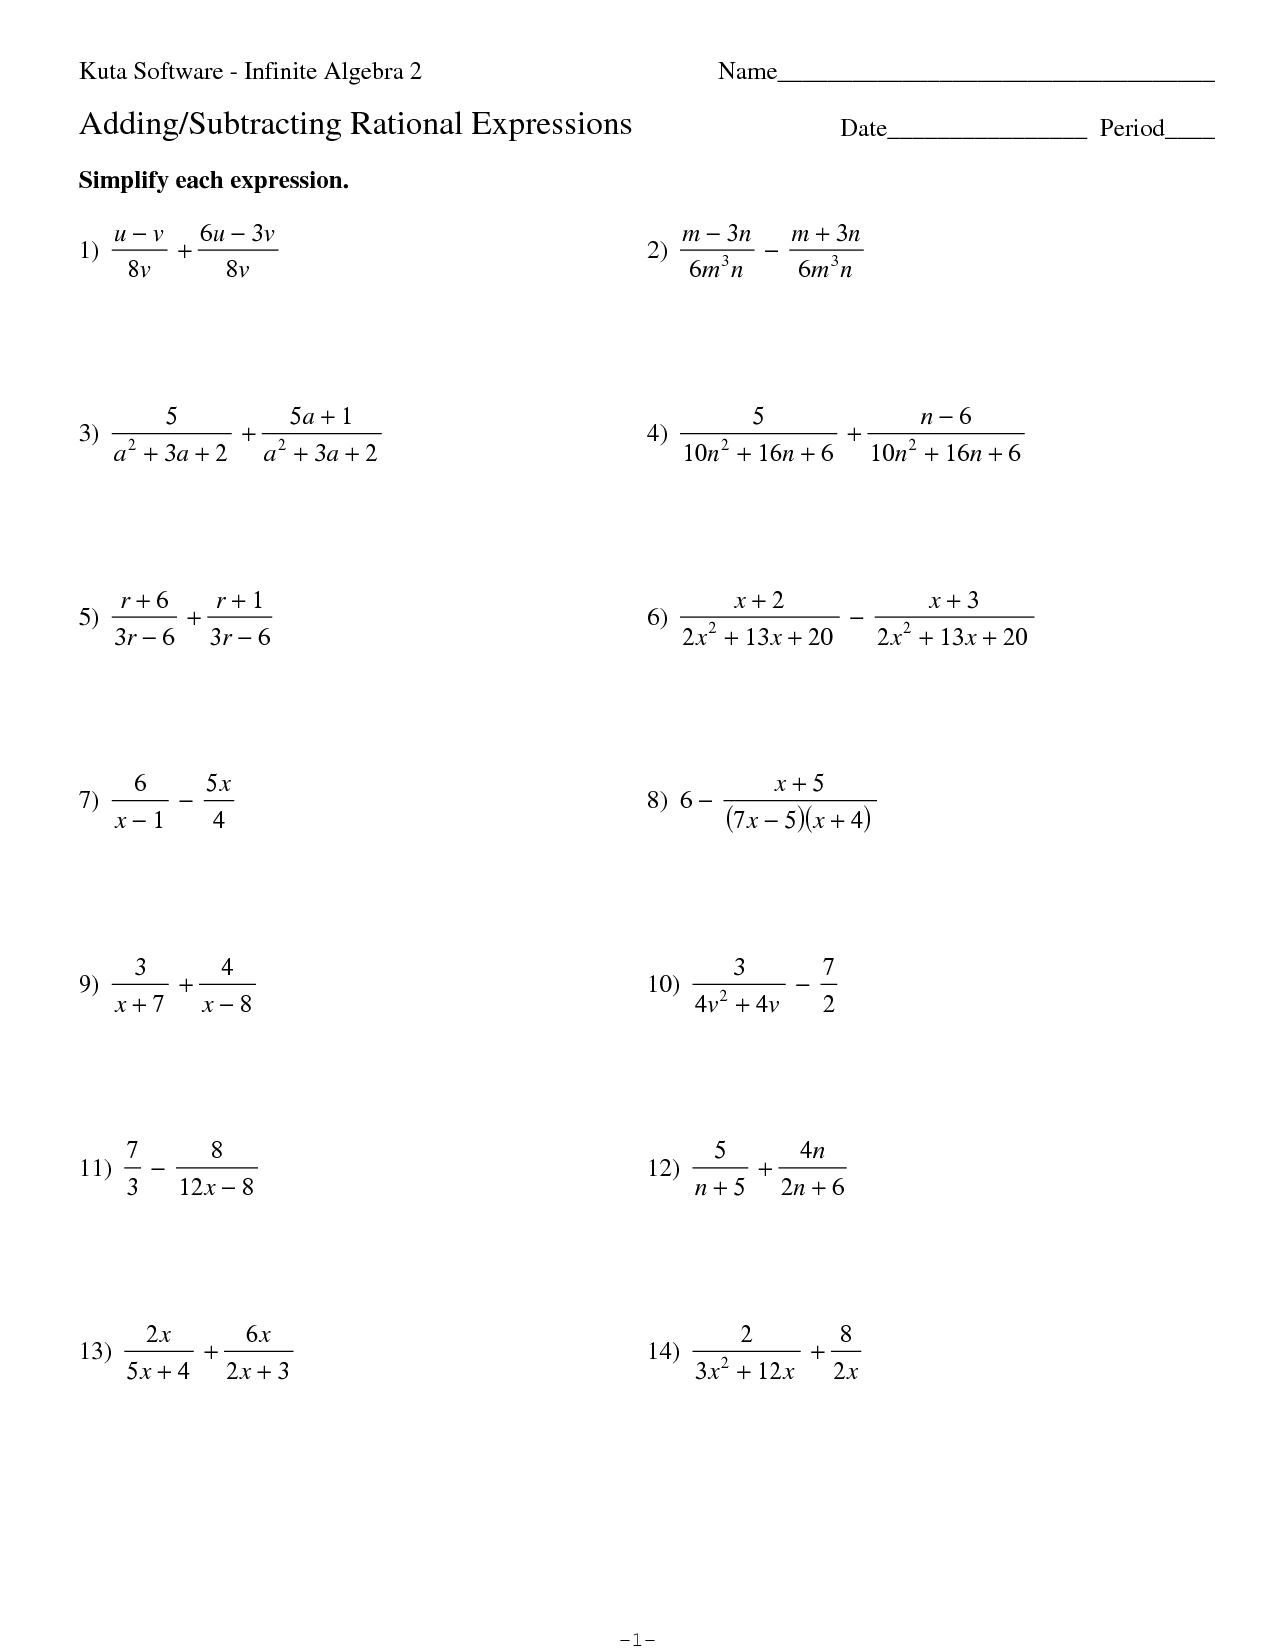 14 Kuta Software Infinite Algebra 2 Worksheet Worksheeto